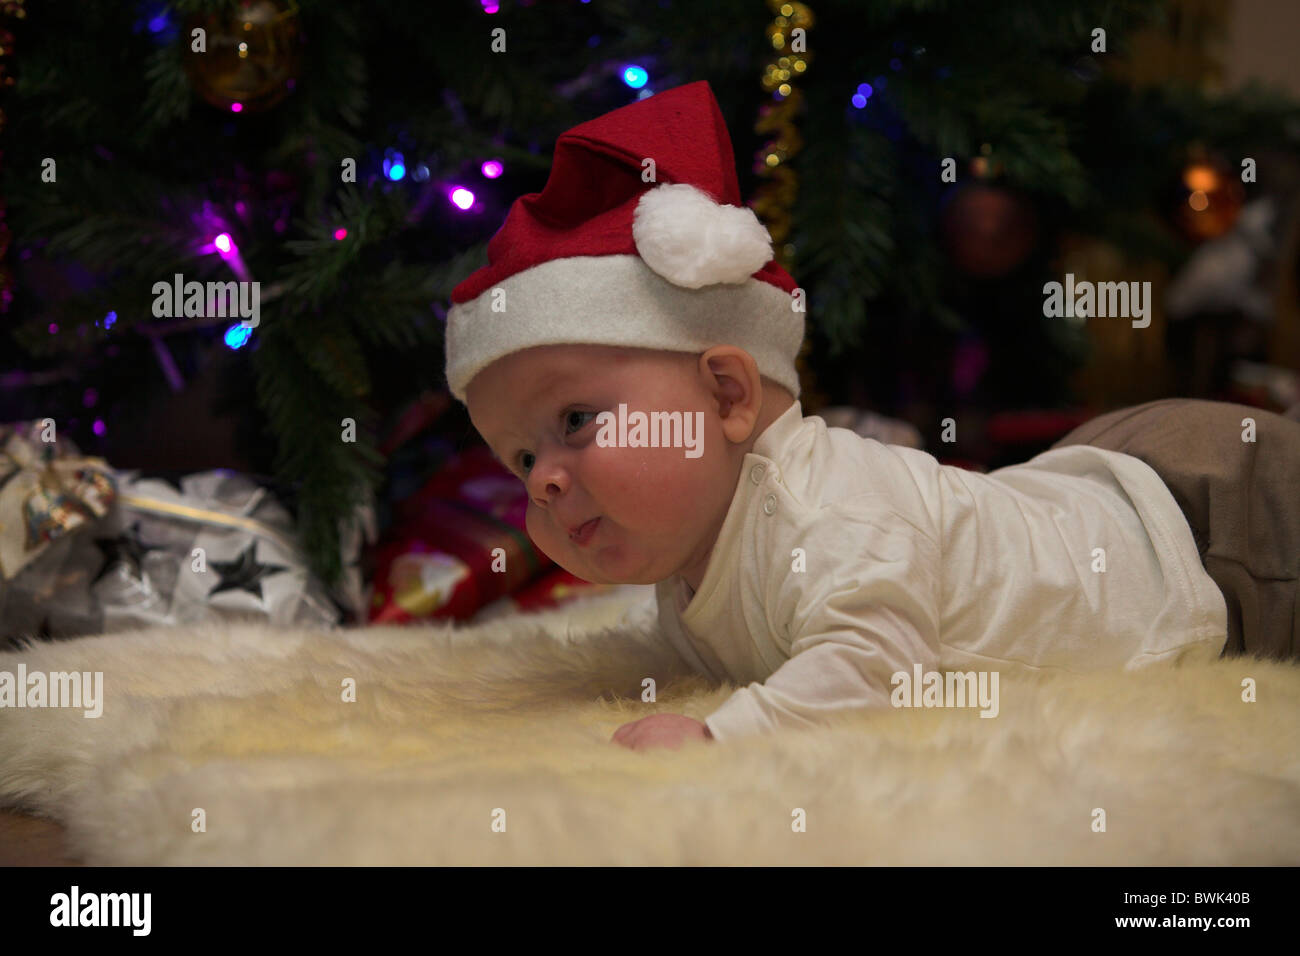 Little baby boy vestiti come santa claus nella parte anteriore di un albero di natale con doni. Foto Stock